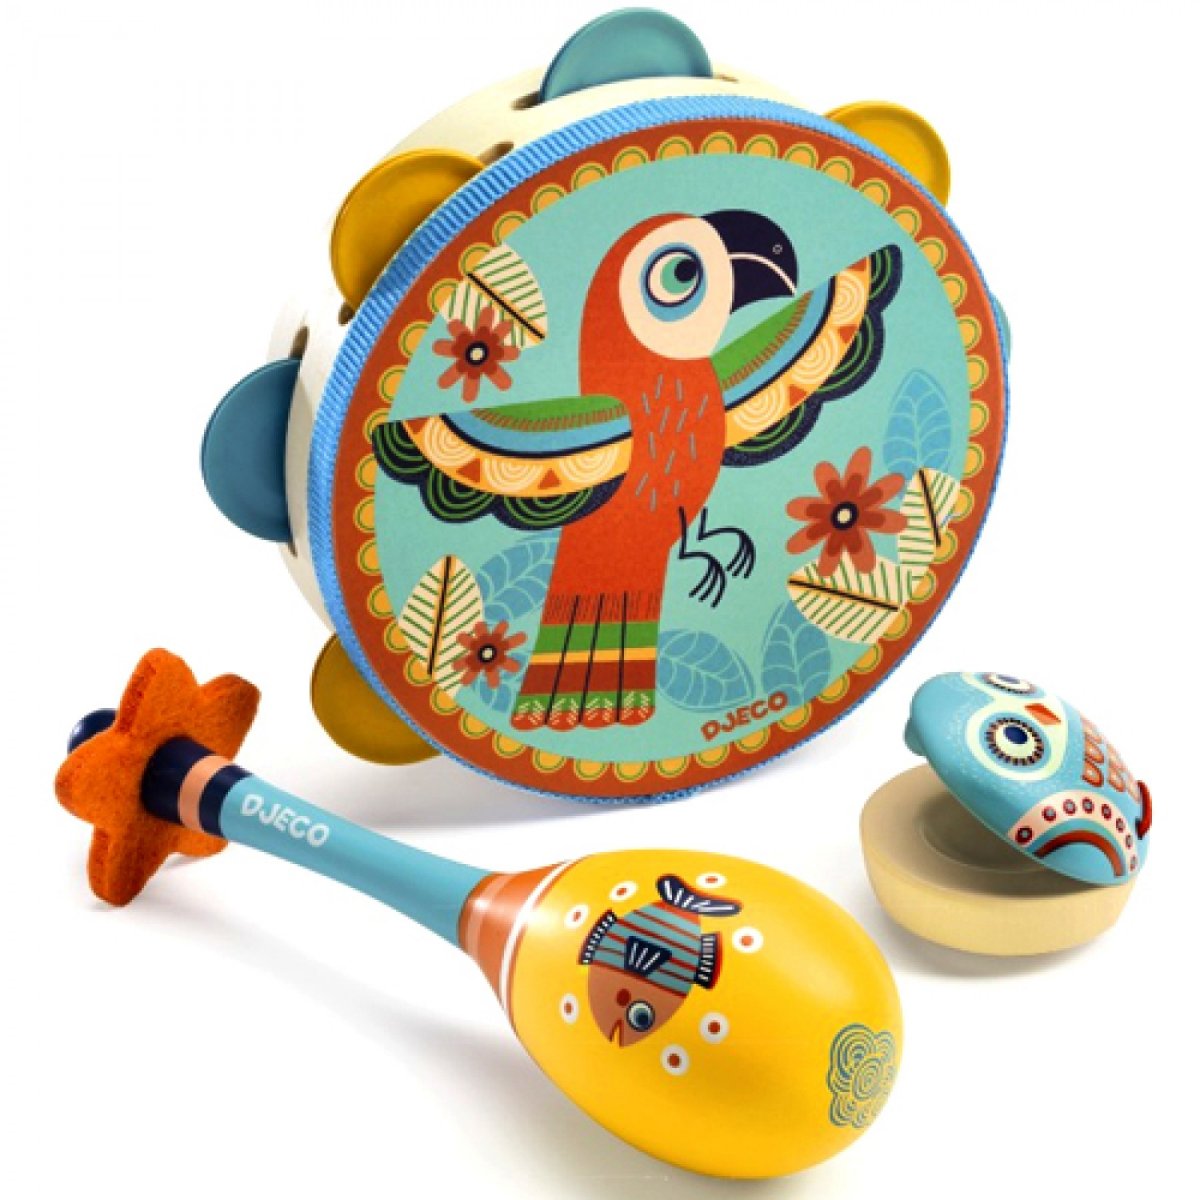 Музыкальные детские: Музыка Детям интернет-магазин Детские музыкальные инструменты и развивающие игрушки